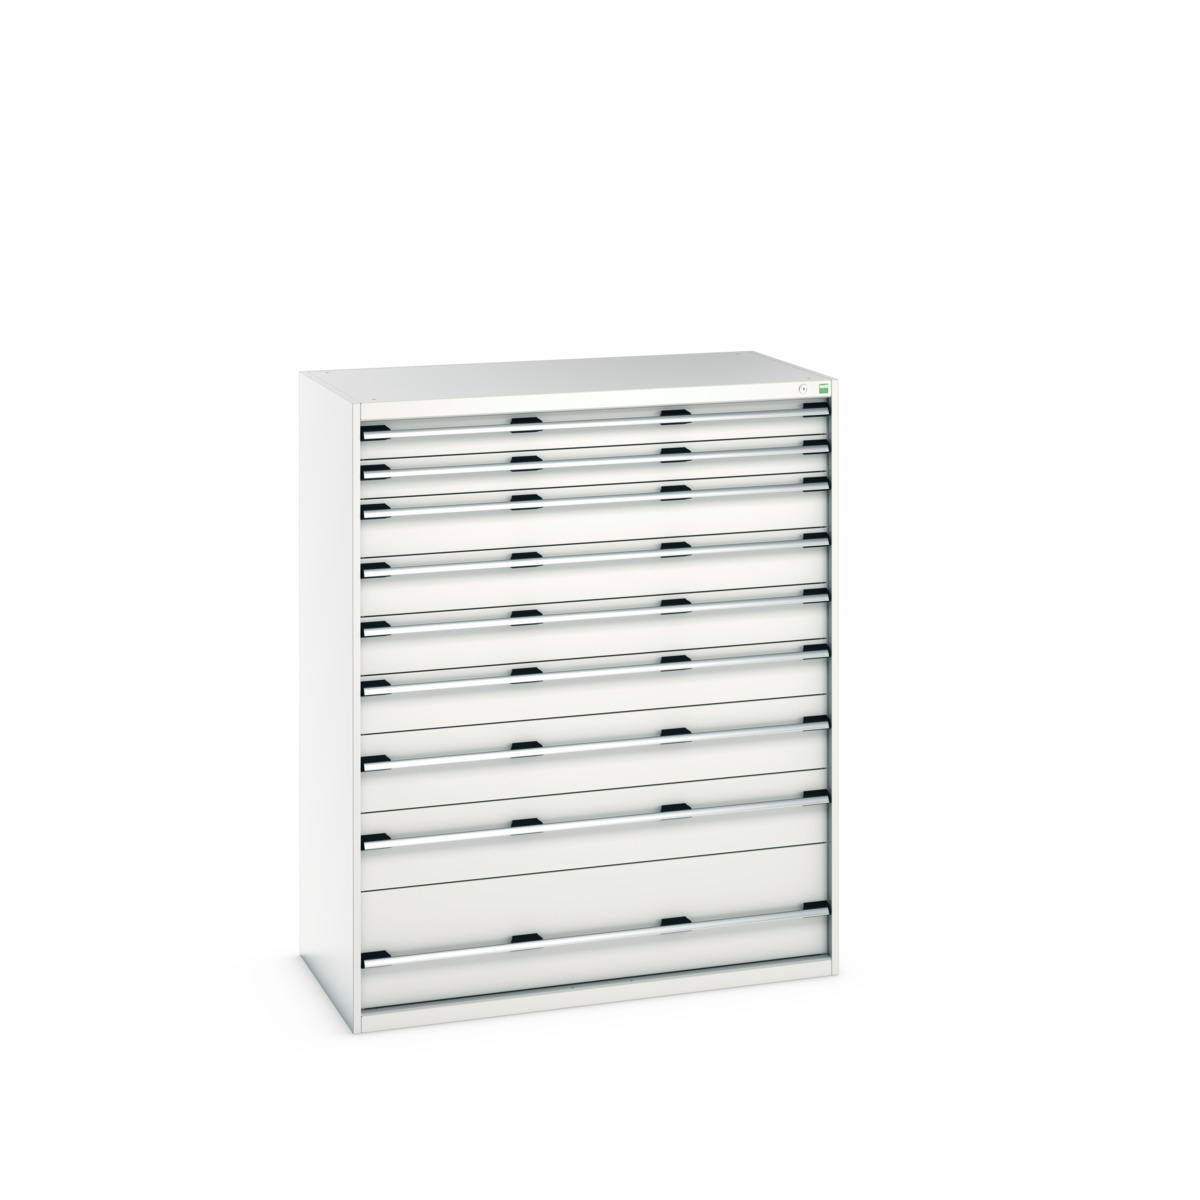 40030075.16V - cubio drawer cabinet